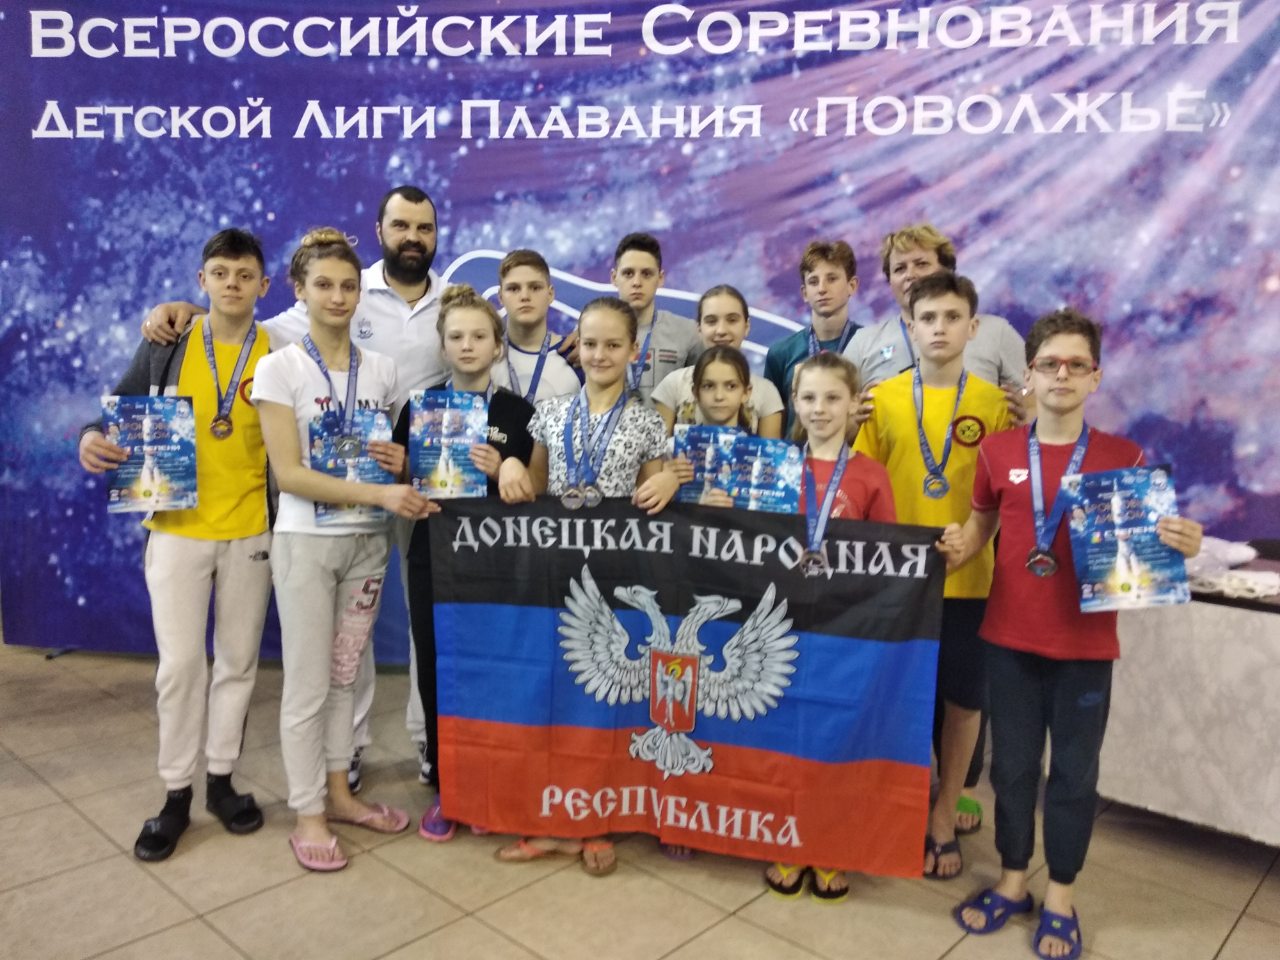 Пловцы Республики завоевали первое командное место на Всероссийских соревнованиях в Пензе